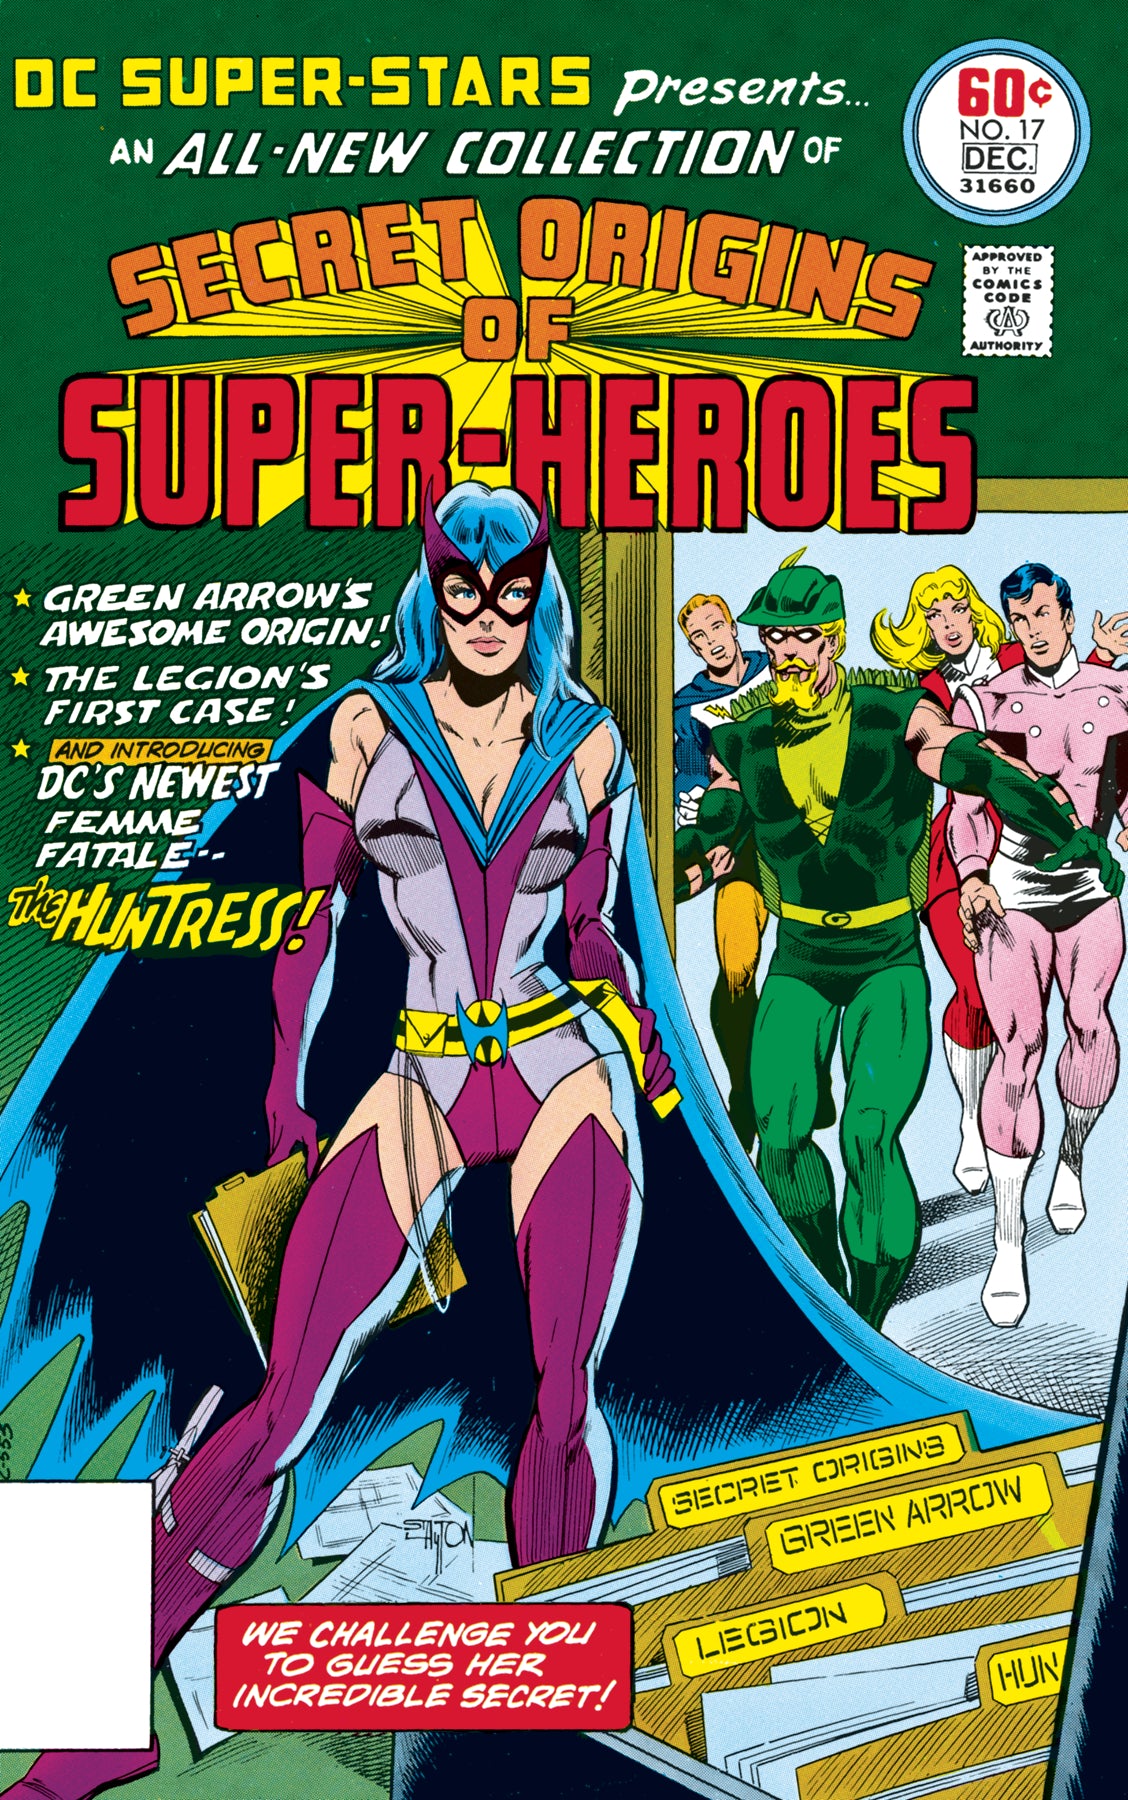 DC SUPER STARS #17 FACSIMILE EDITION | Game Master's Emporium (The New GME)